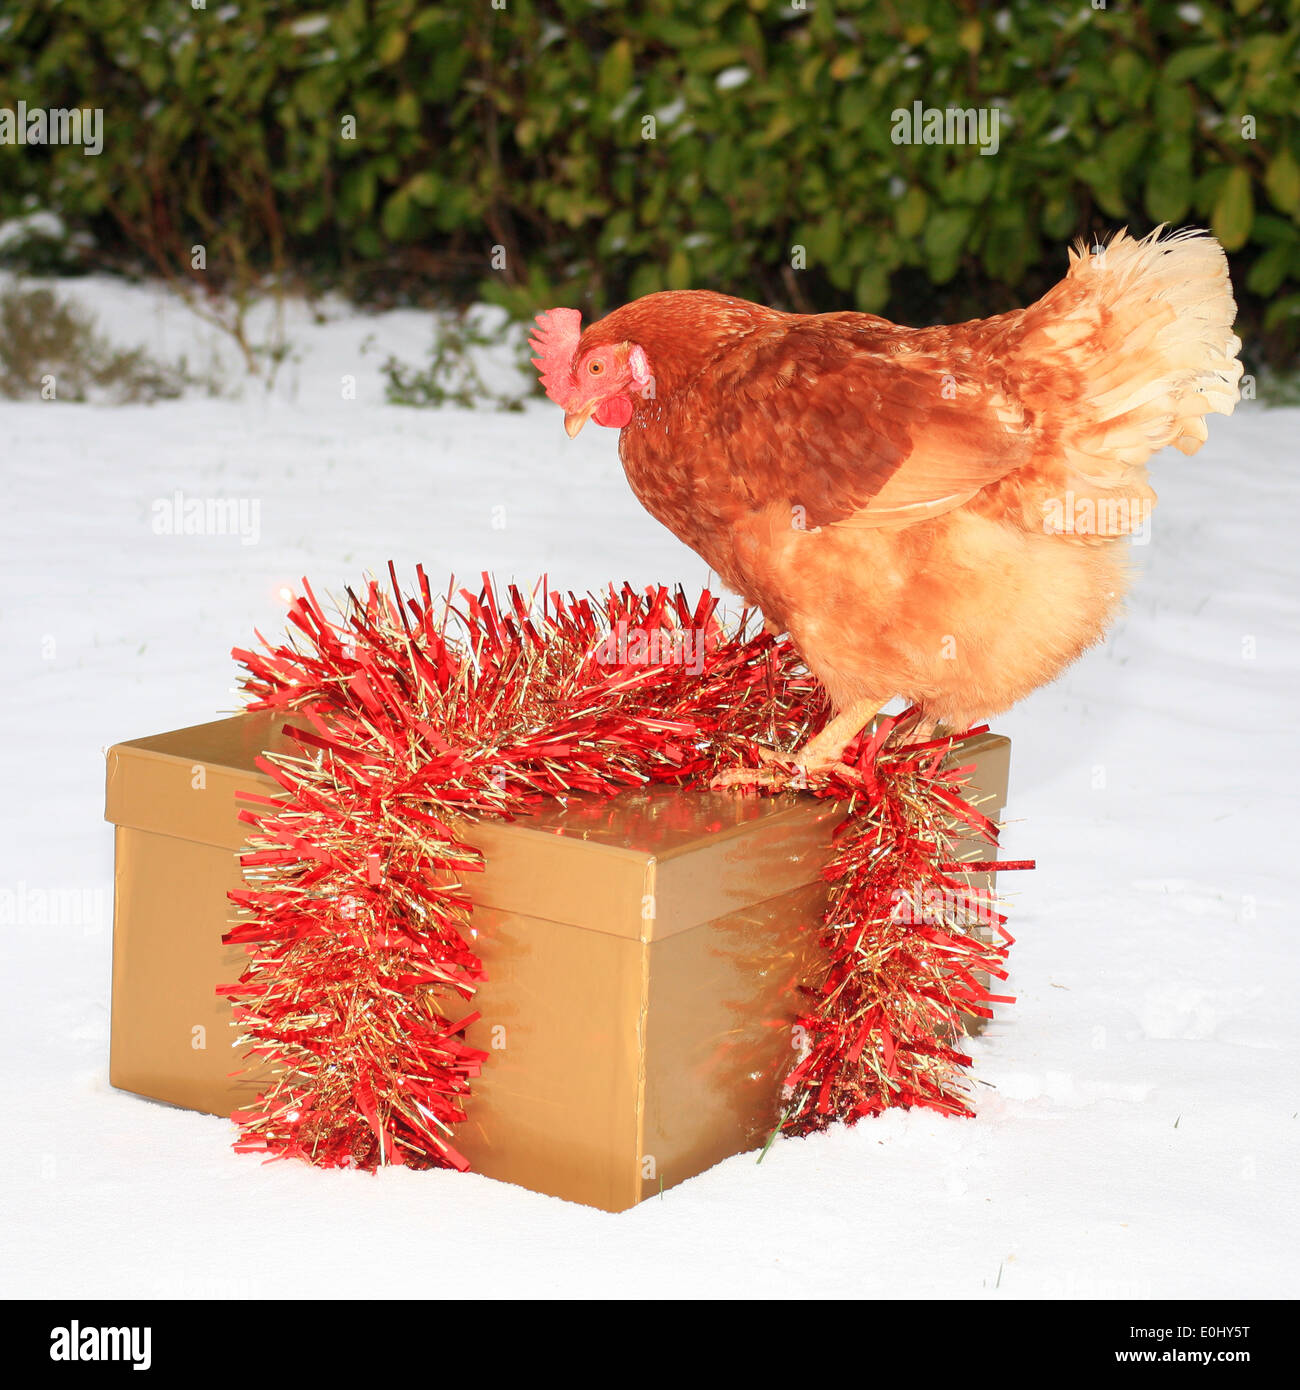 Poulet sur cadeau de Noël dans la neige Photo Stock - Alamy